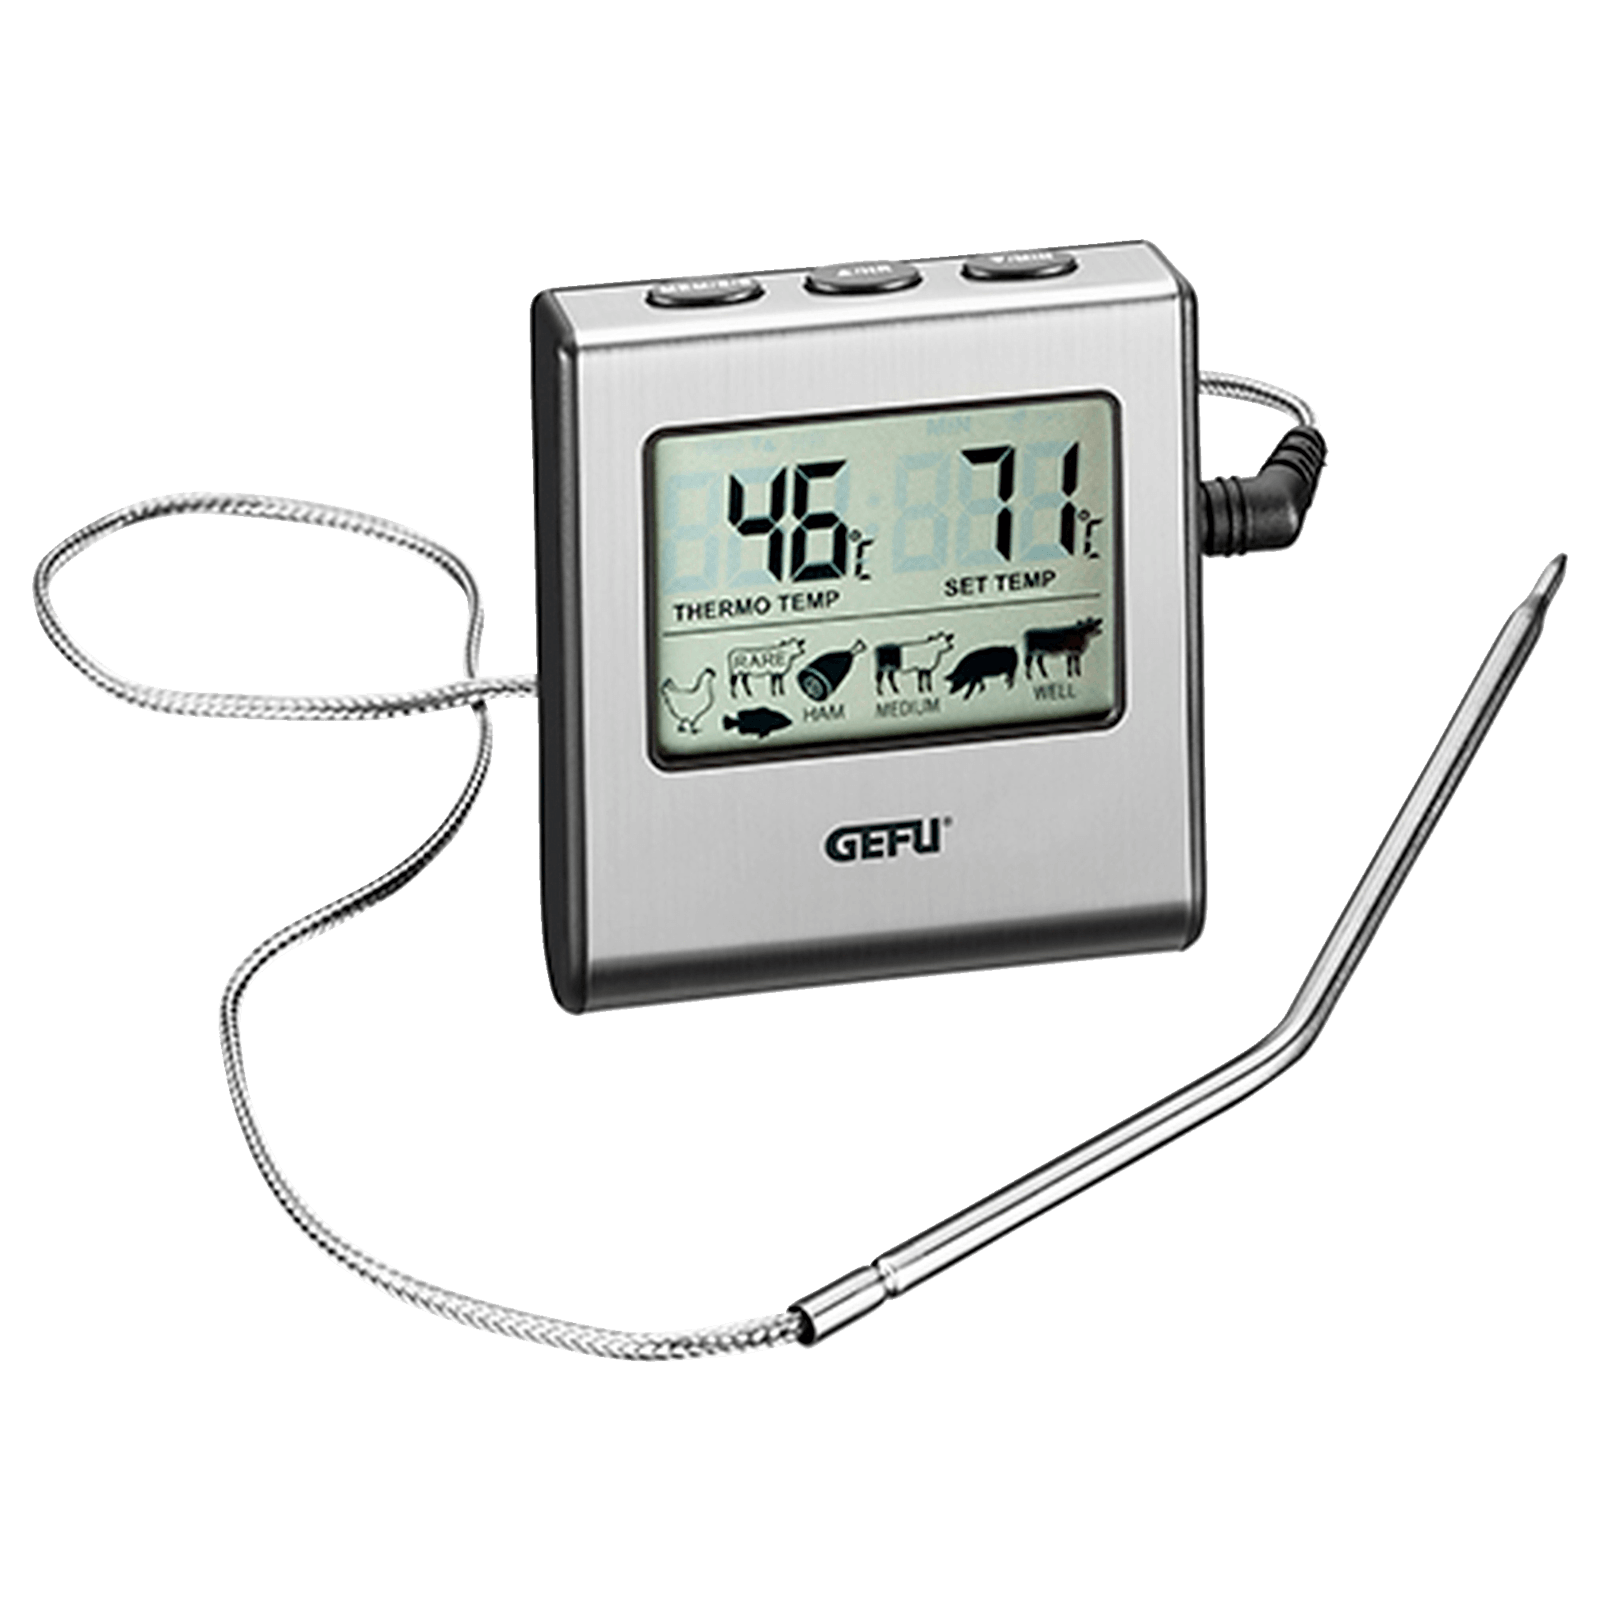 Küchenthermometer online kaufen - REWE.de